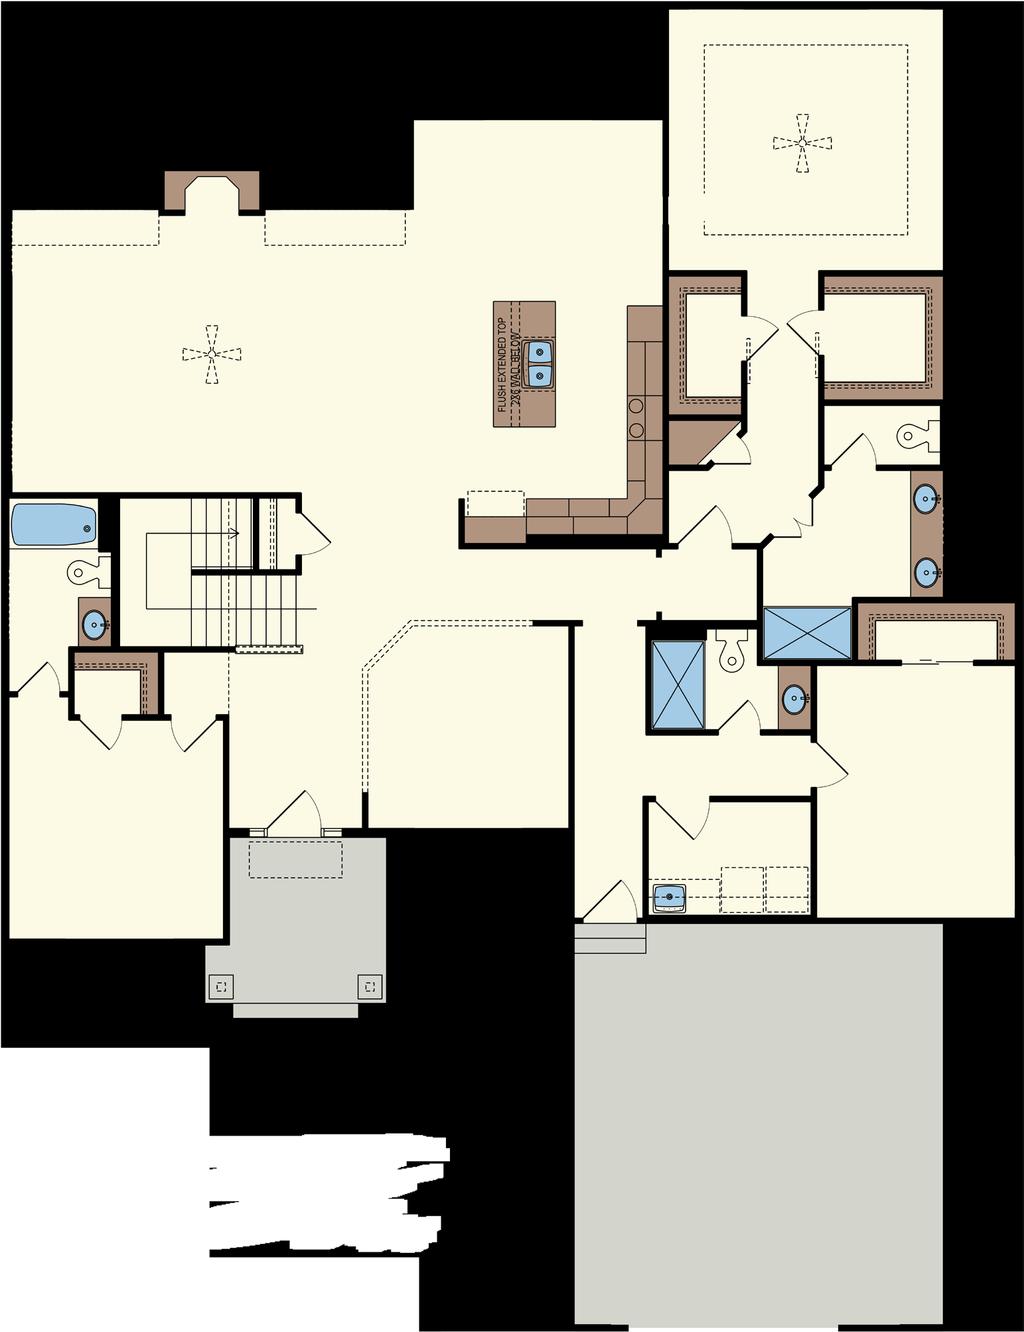 BEDROOM -CLASSIC FLOORPLAN - w/ Third Bedroom & Basement NOOK Optional Pan Ceiling 8 into trusses Foyer: 7 x 10 Great Room: 22 x 15 Nook: 13 x